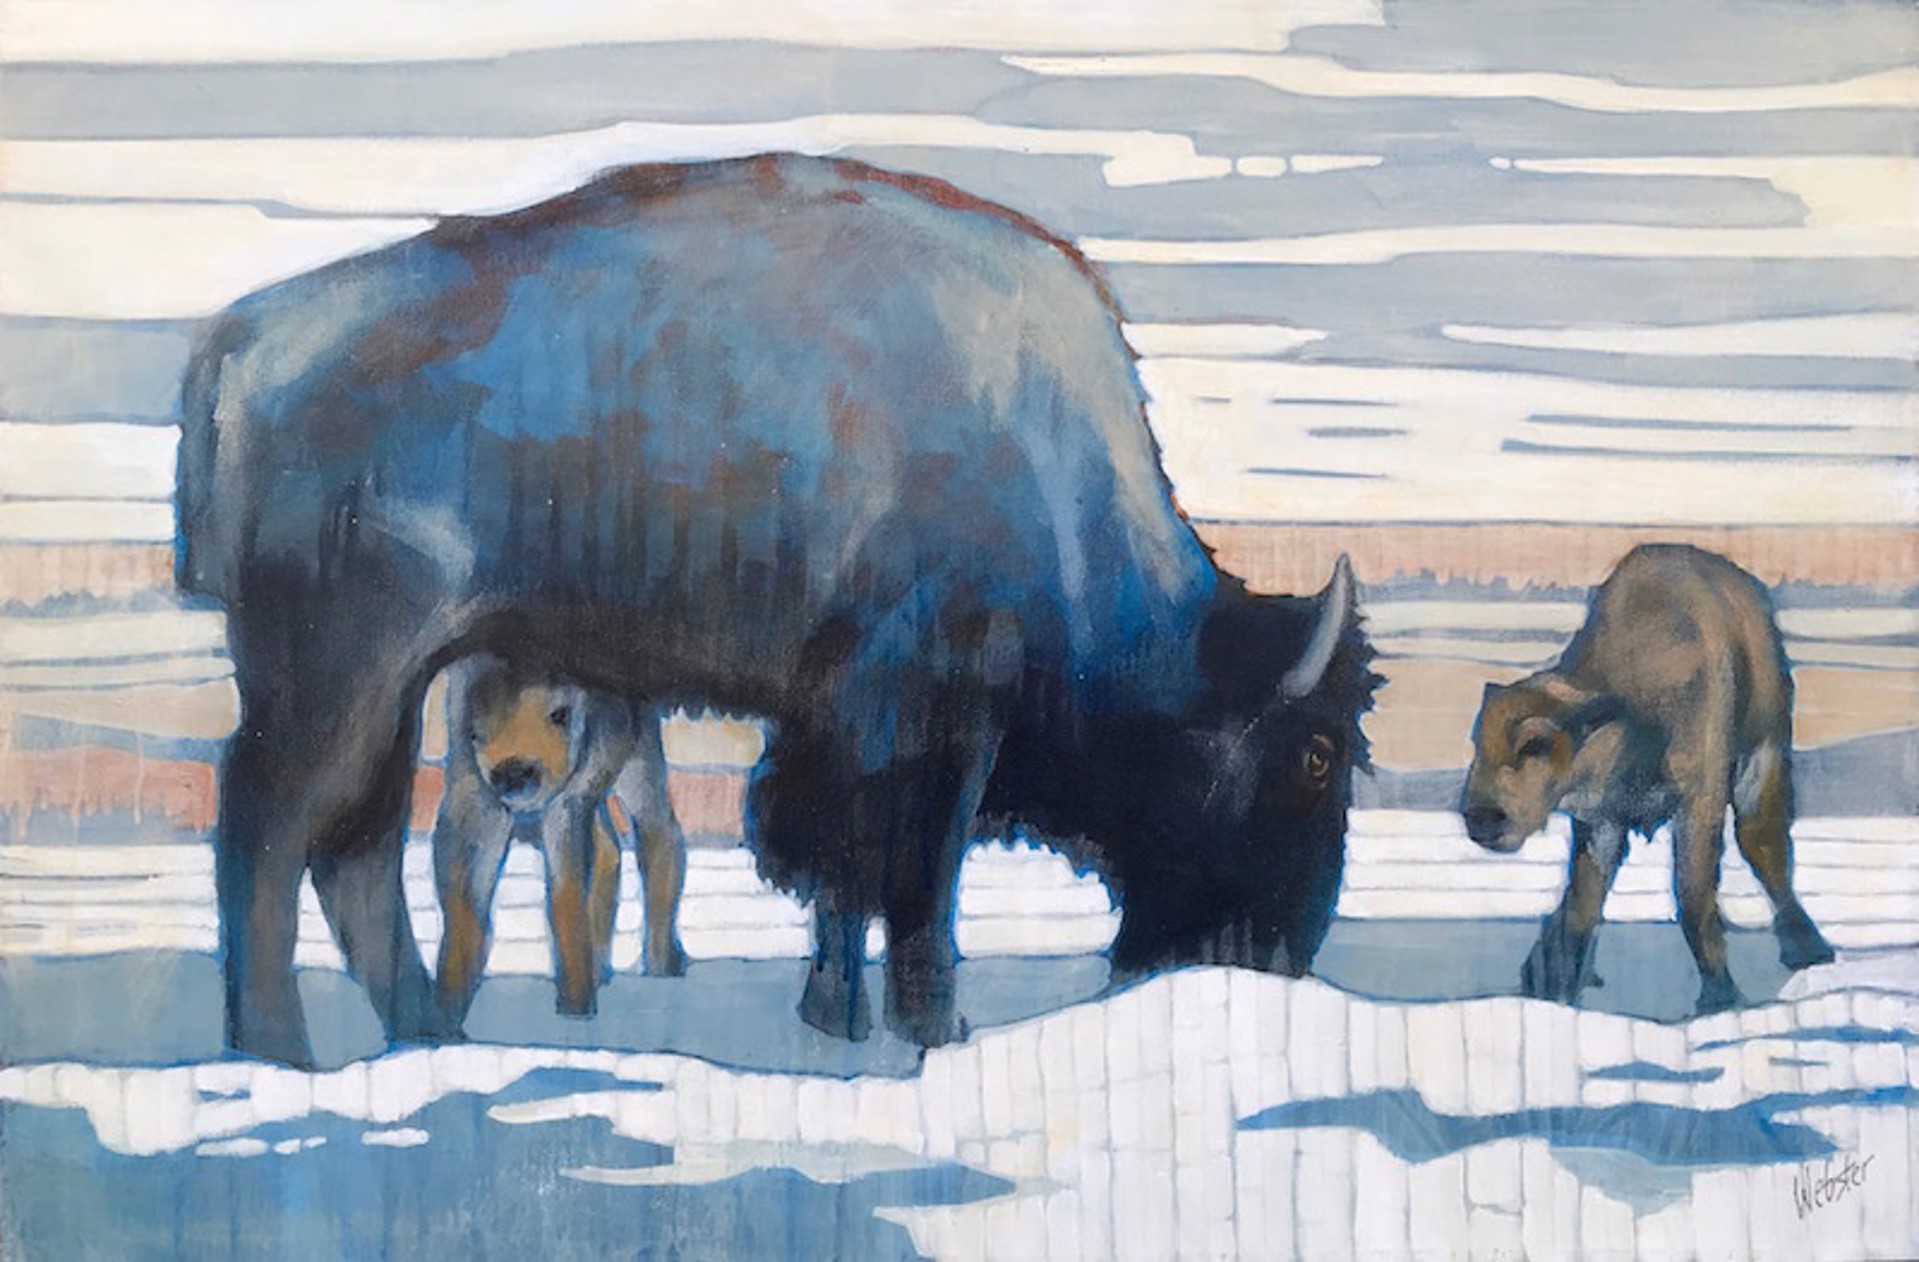 Commission - Return of the Bison by John Webster